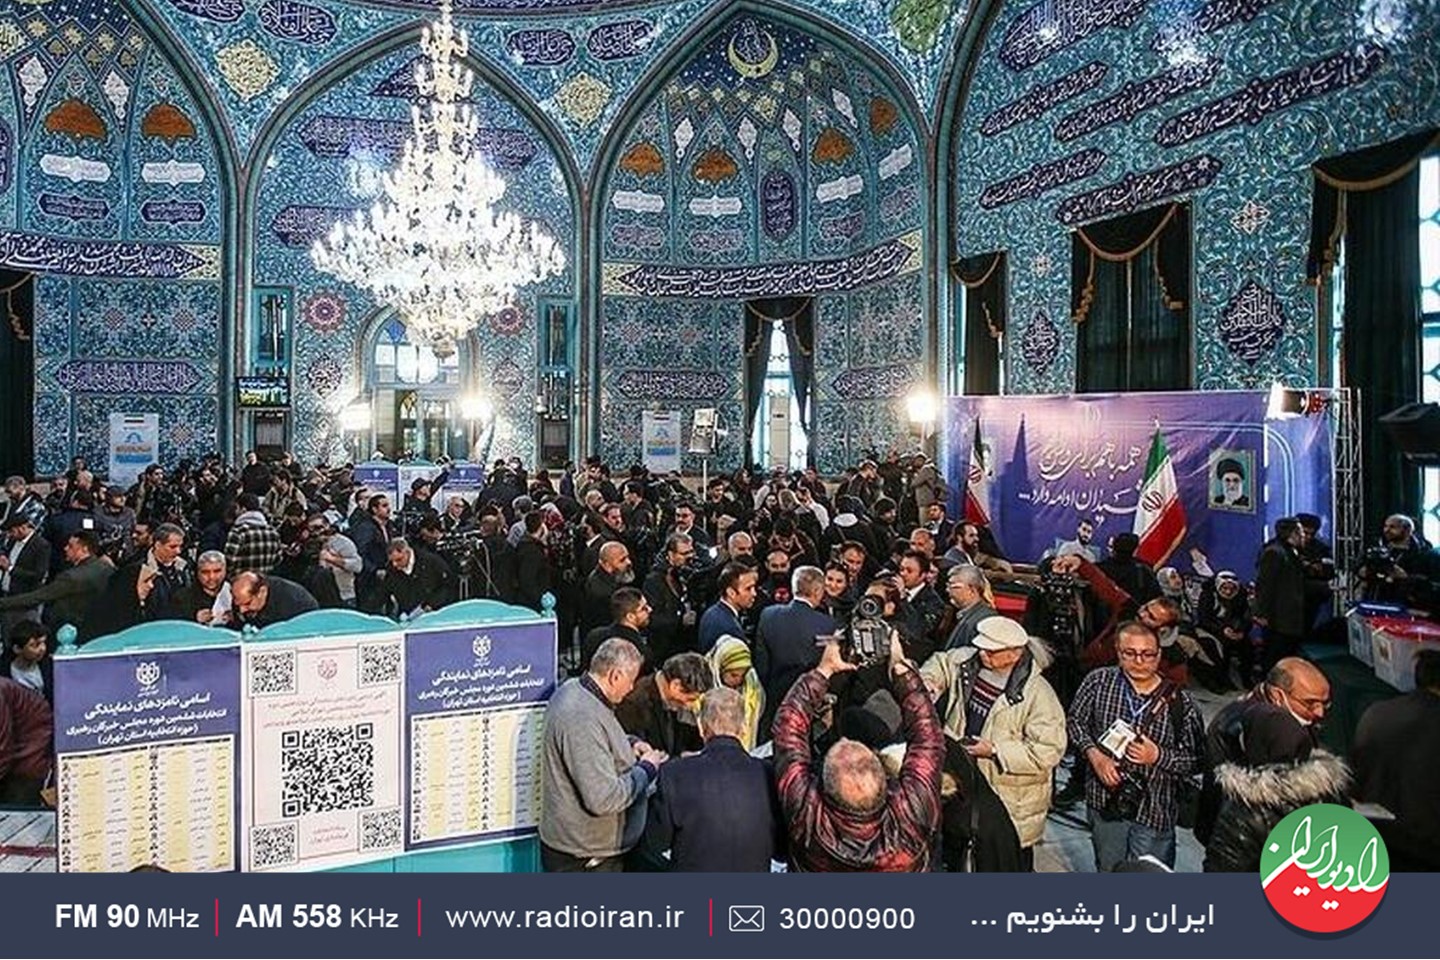 پیام همبستگی و همدلی مردم ایران در «جشن حضور»